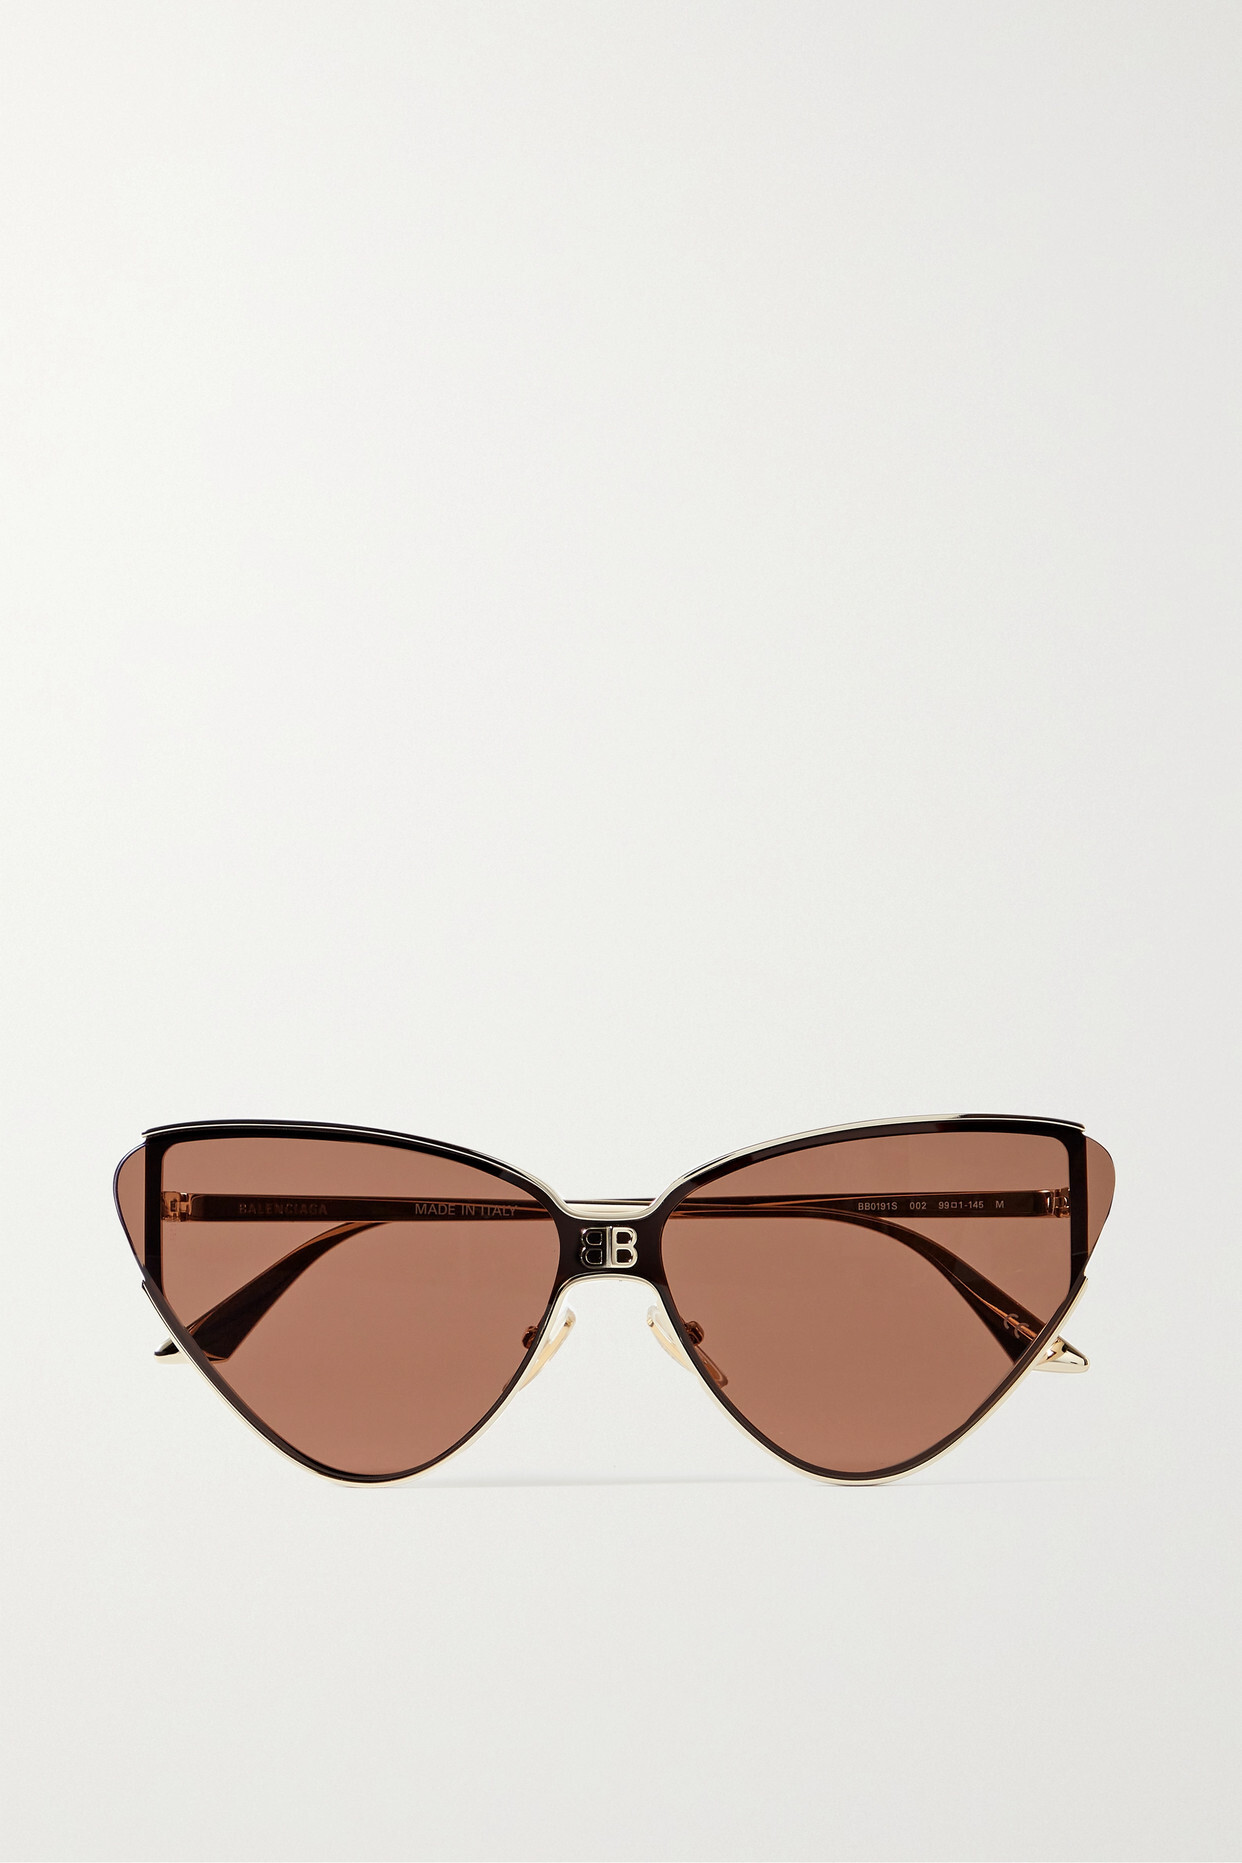 Balenciaga Eyewear - Shield Cat-eye Gold-tone Sunglasses - Brown